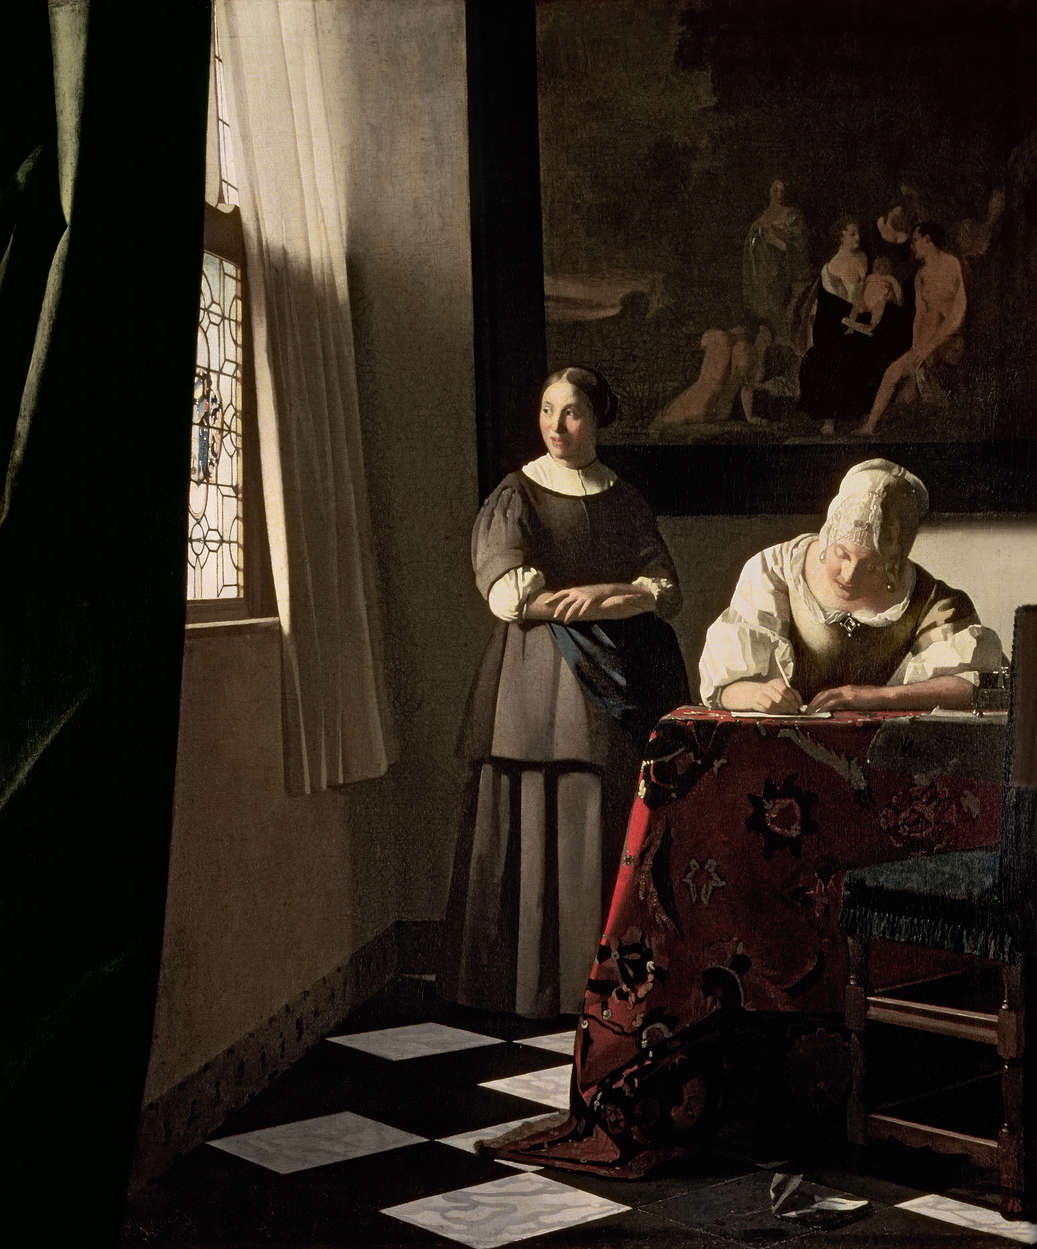             Papier peint "Dame qui écrit une lettre avec sa servante" de Jan Vermeer
        